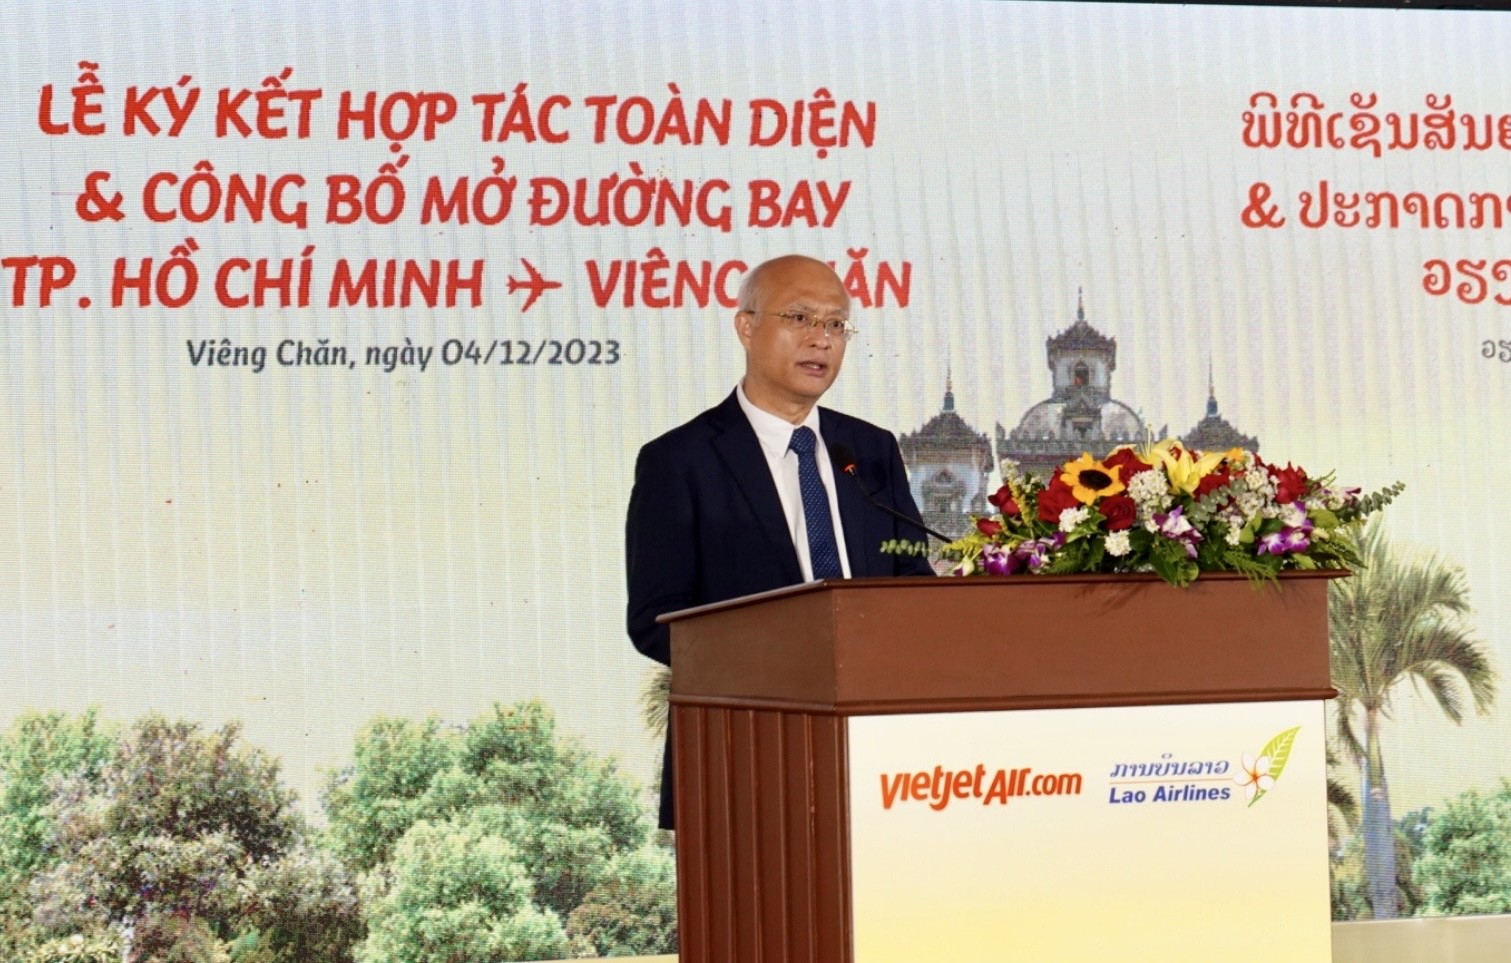 Ông Ngampasong Muongmany - Bộ trưởng Bộ Công chính và Vận tải CHDCND Lào phát biểu chúc mừng ký kết hợp tác Vietjet - Lao Airlines và đường bay mới của Vietjet